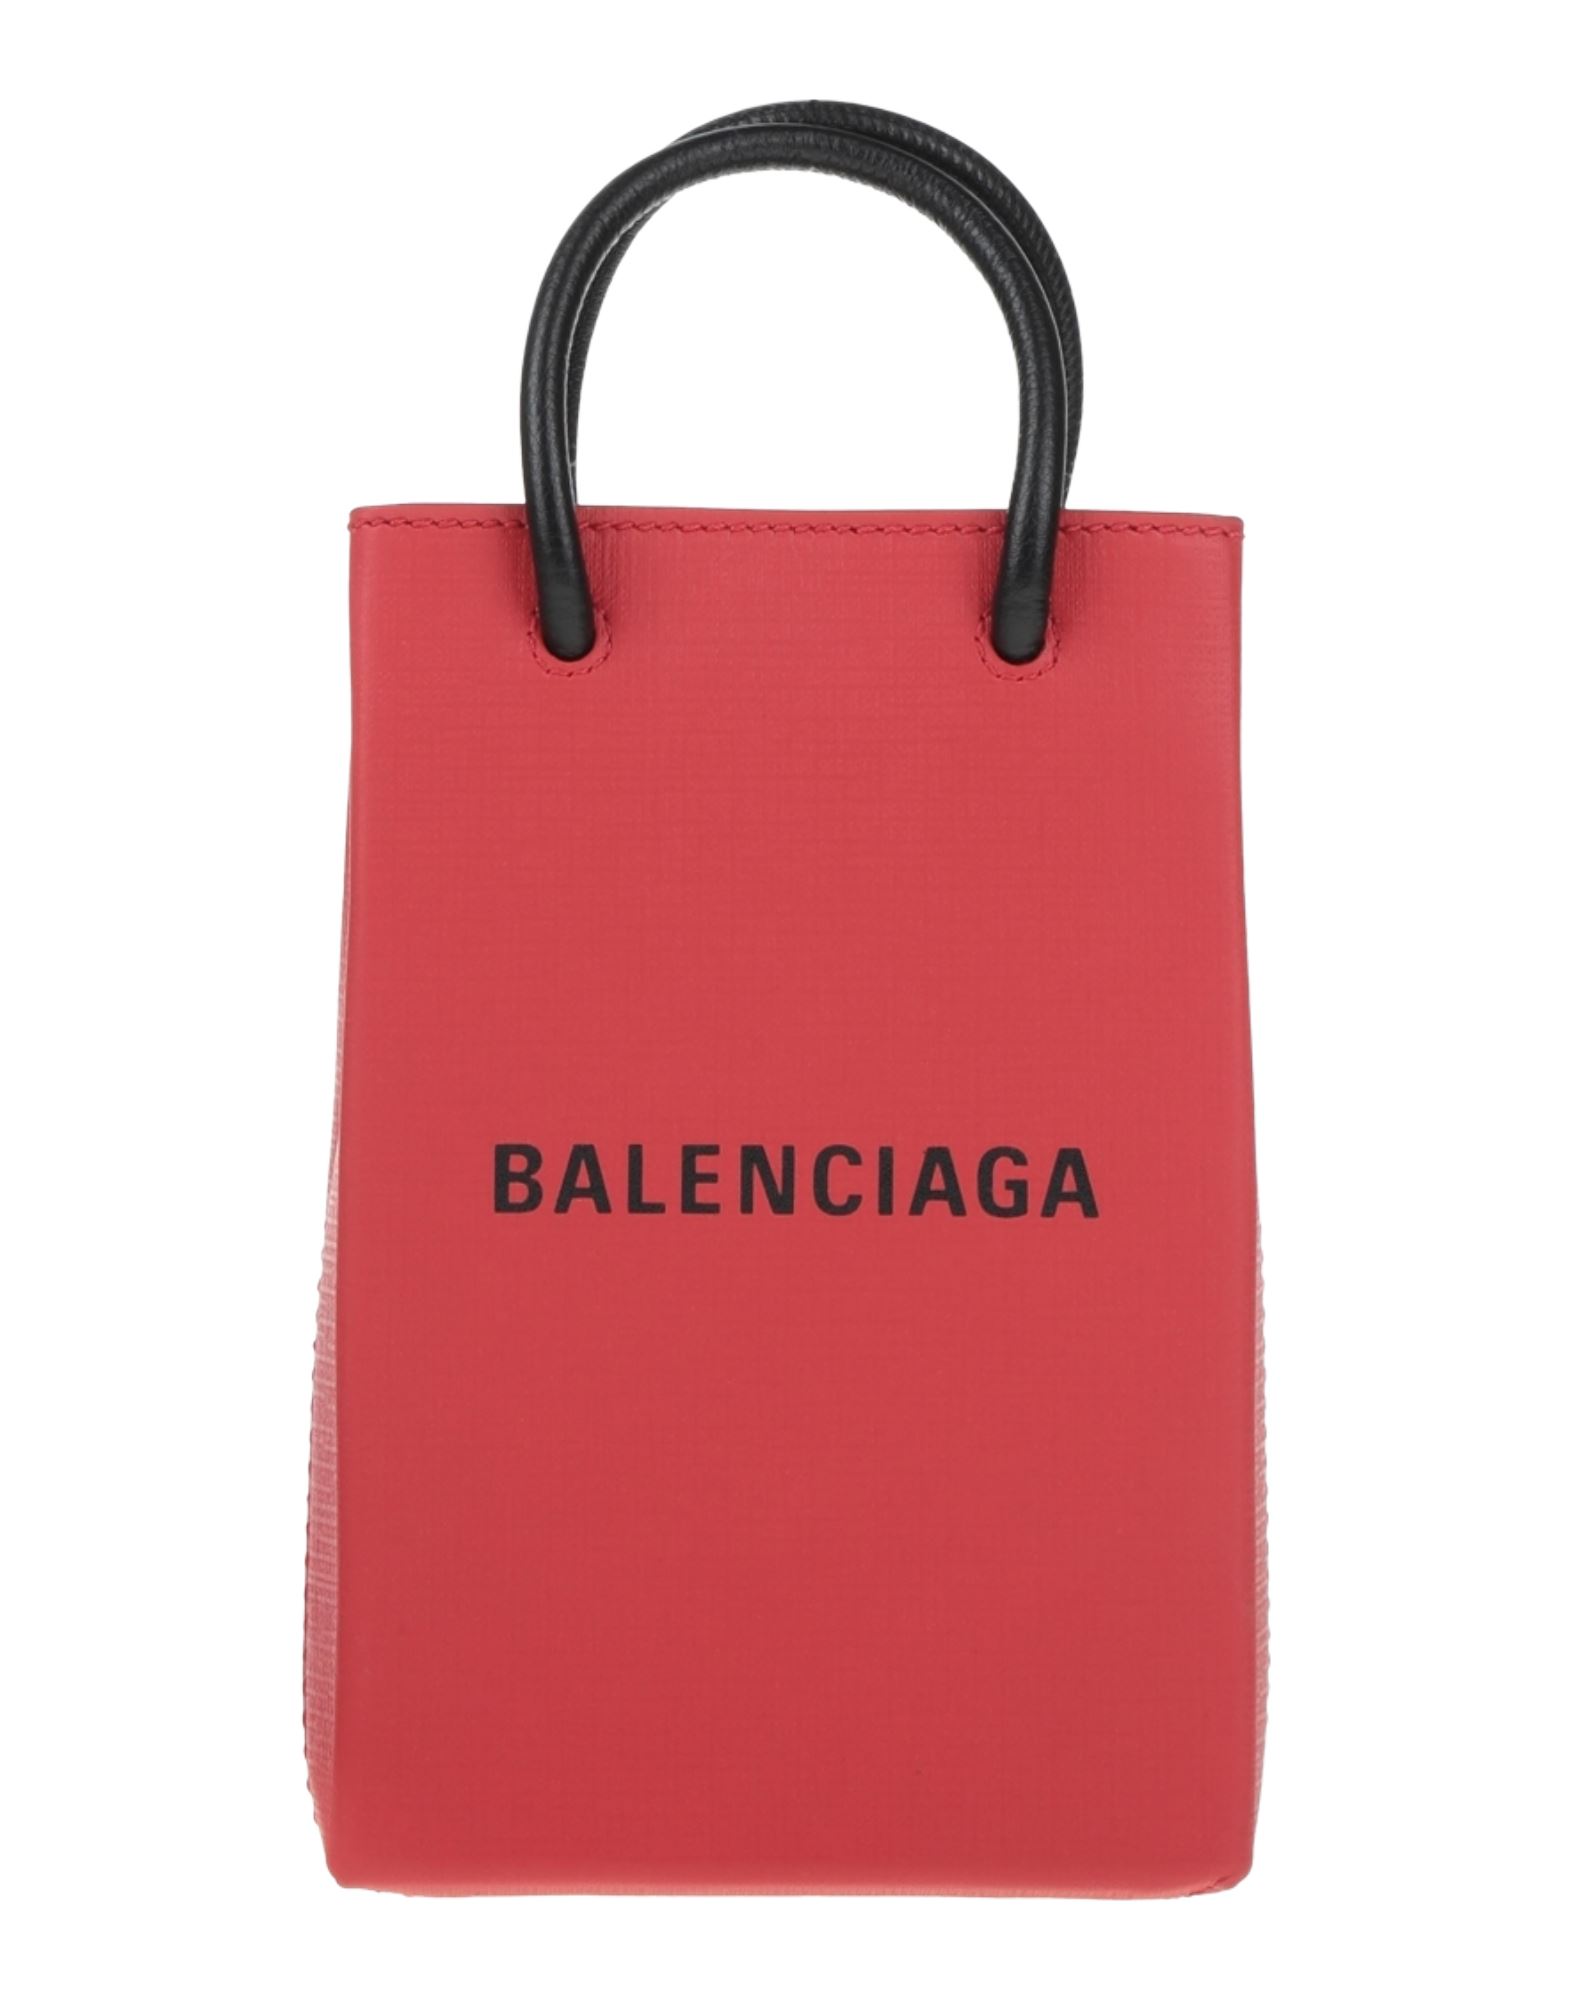 Balenciaga Handbags In Red